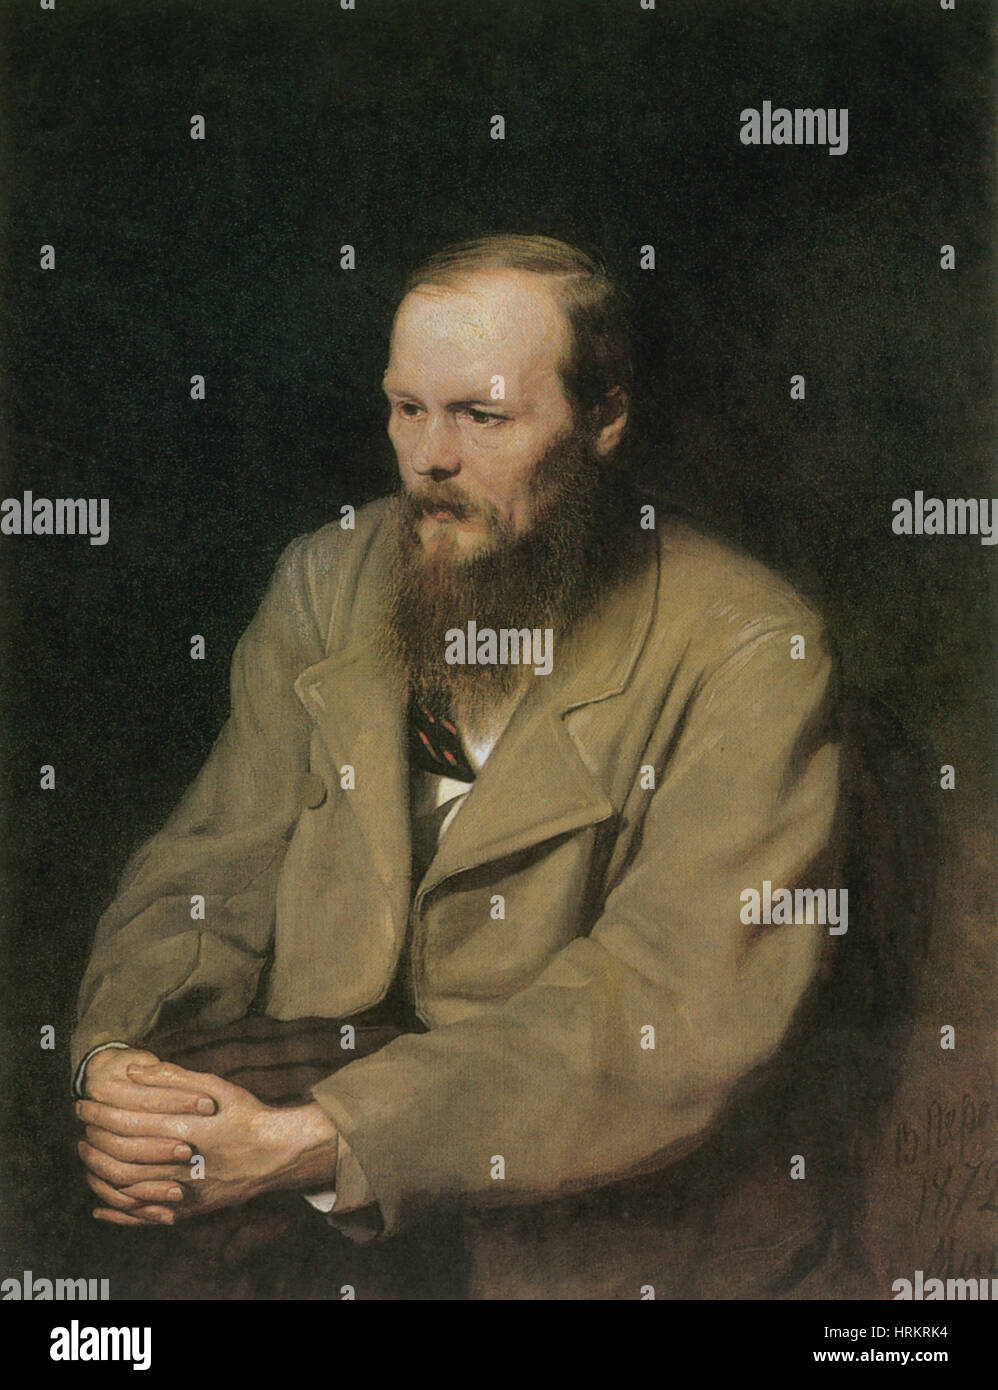 Fyodor Dostoyevsky, Russian Author Stock Photo